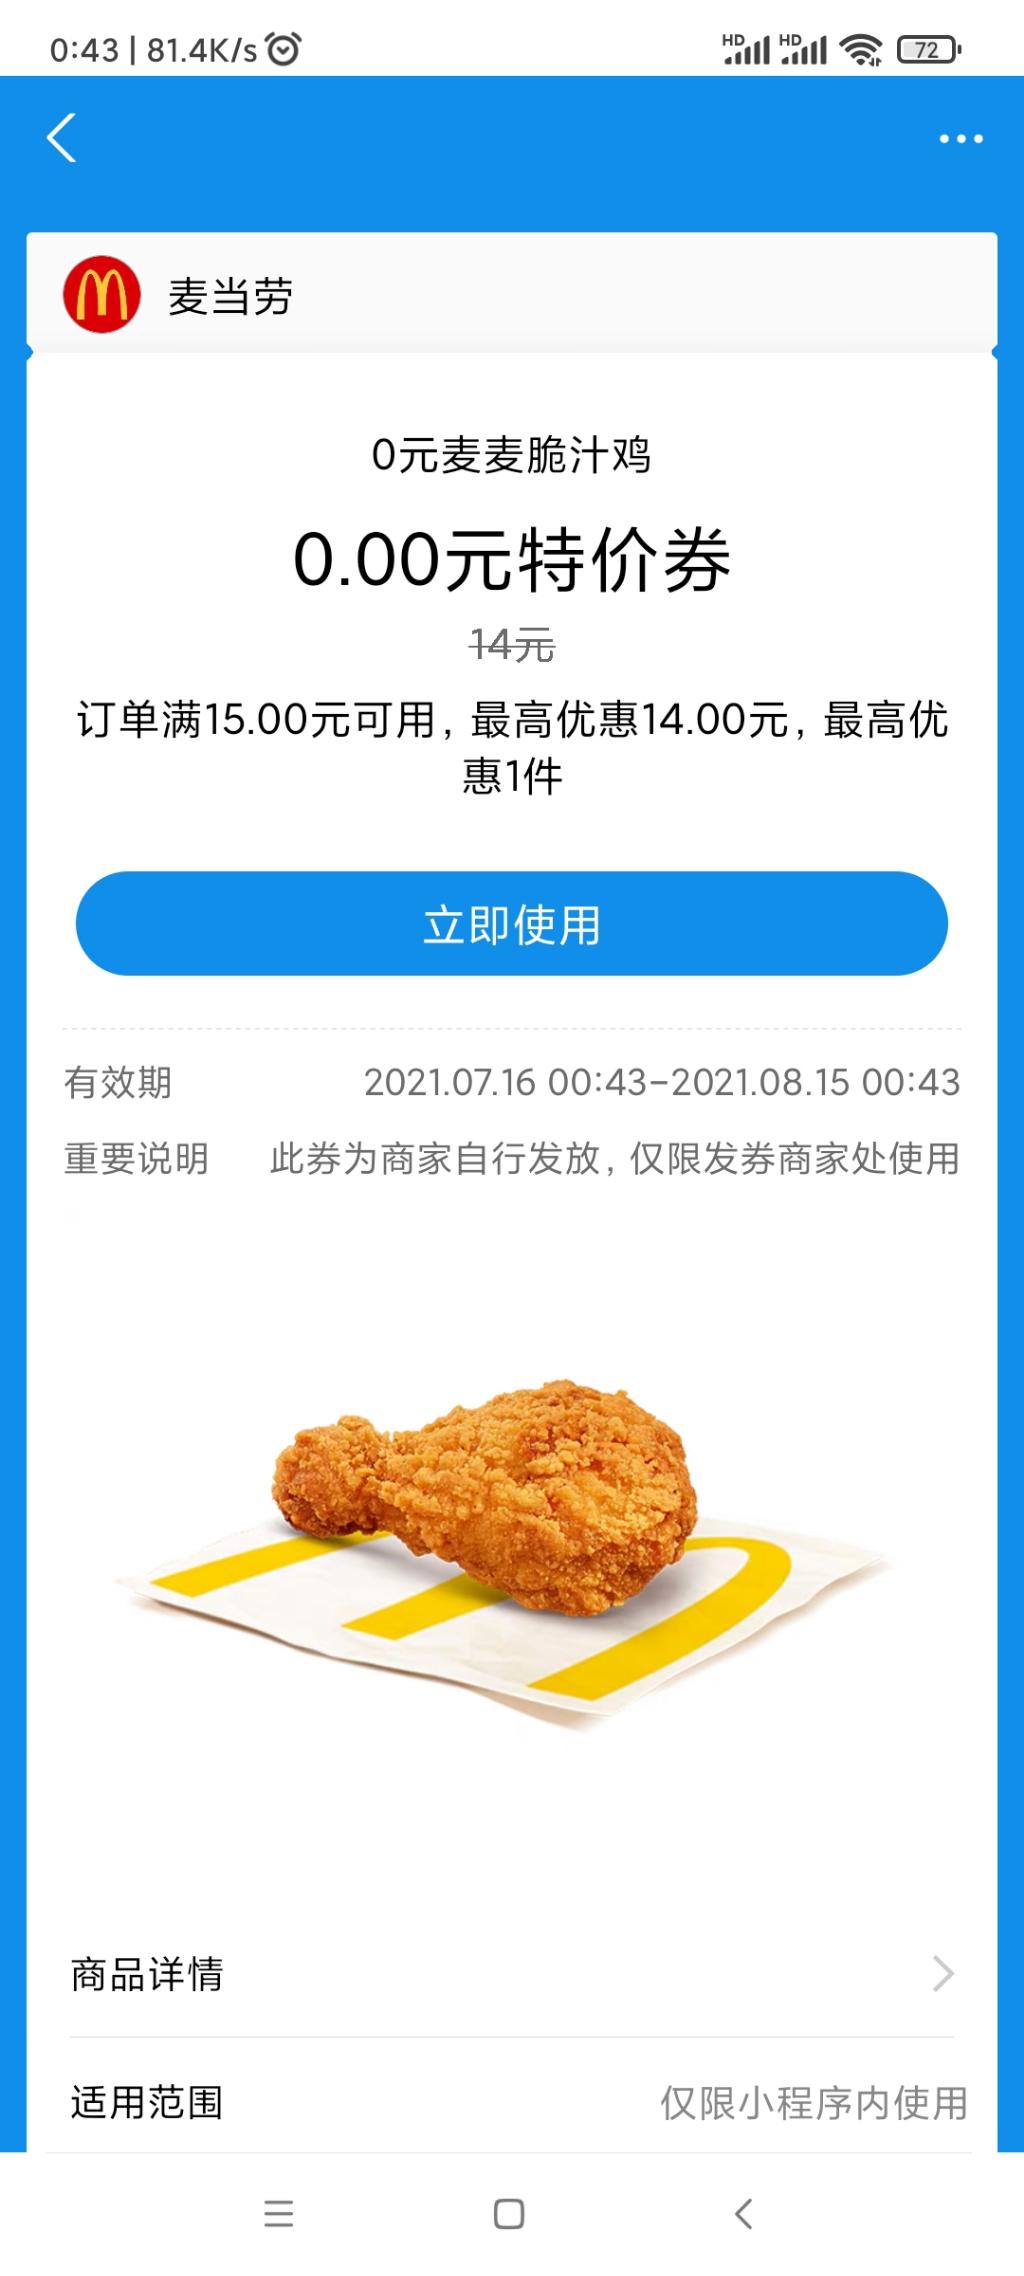 麦当劳支付宝 又可以领 鸡腿和豆浆了 需要搭一个低消-惠小助(52huixz.com)